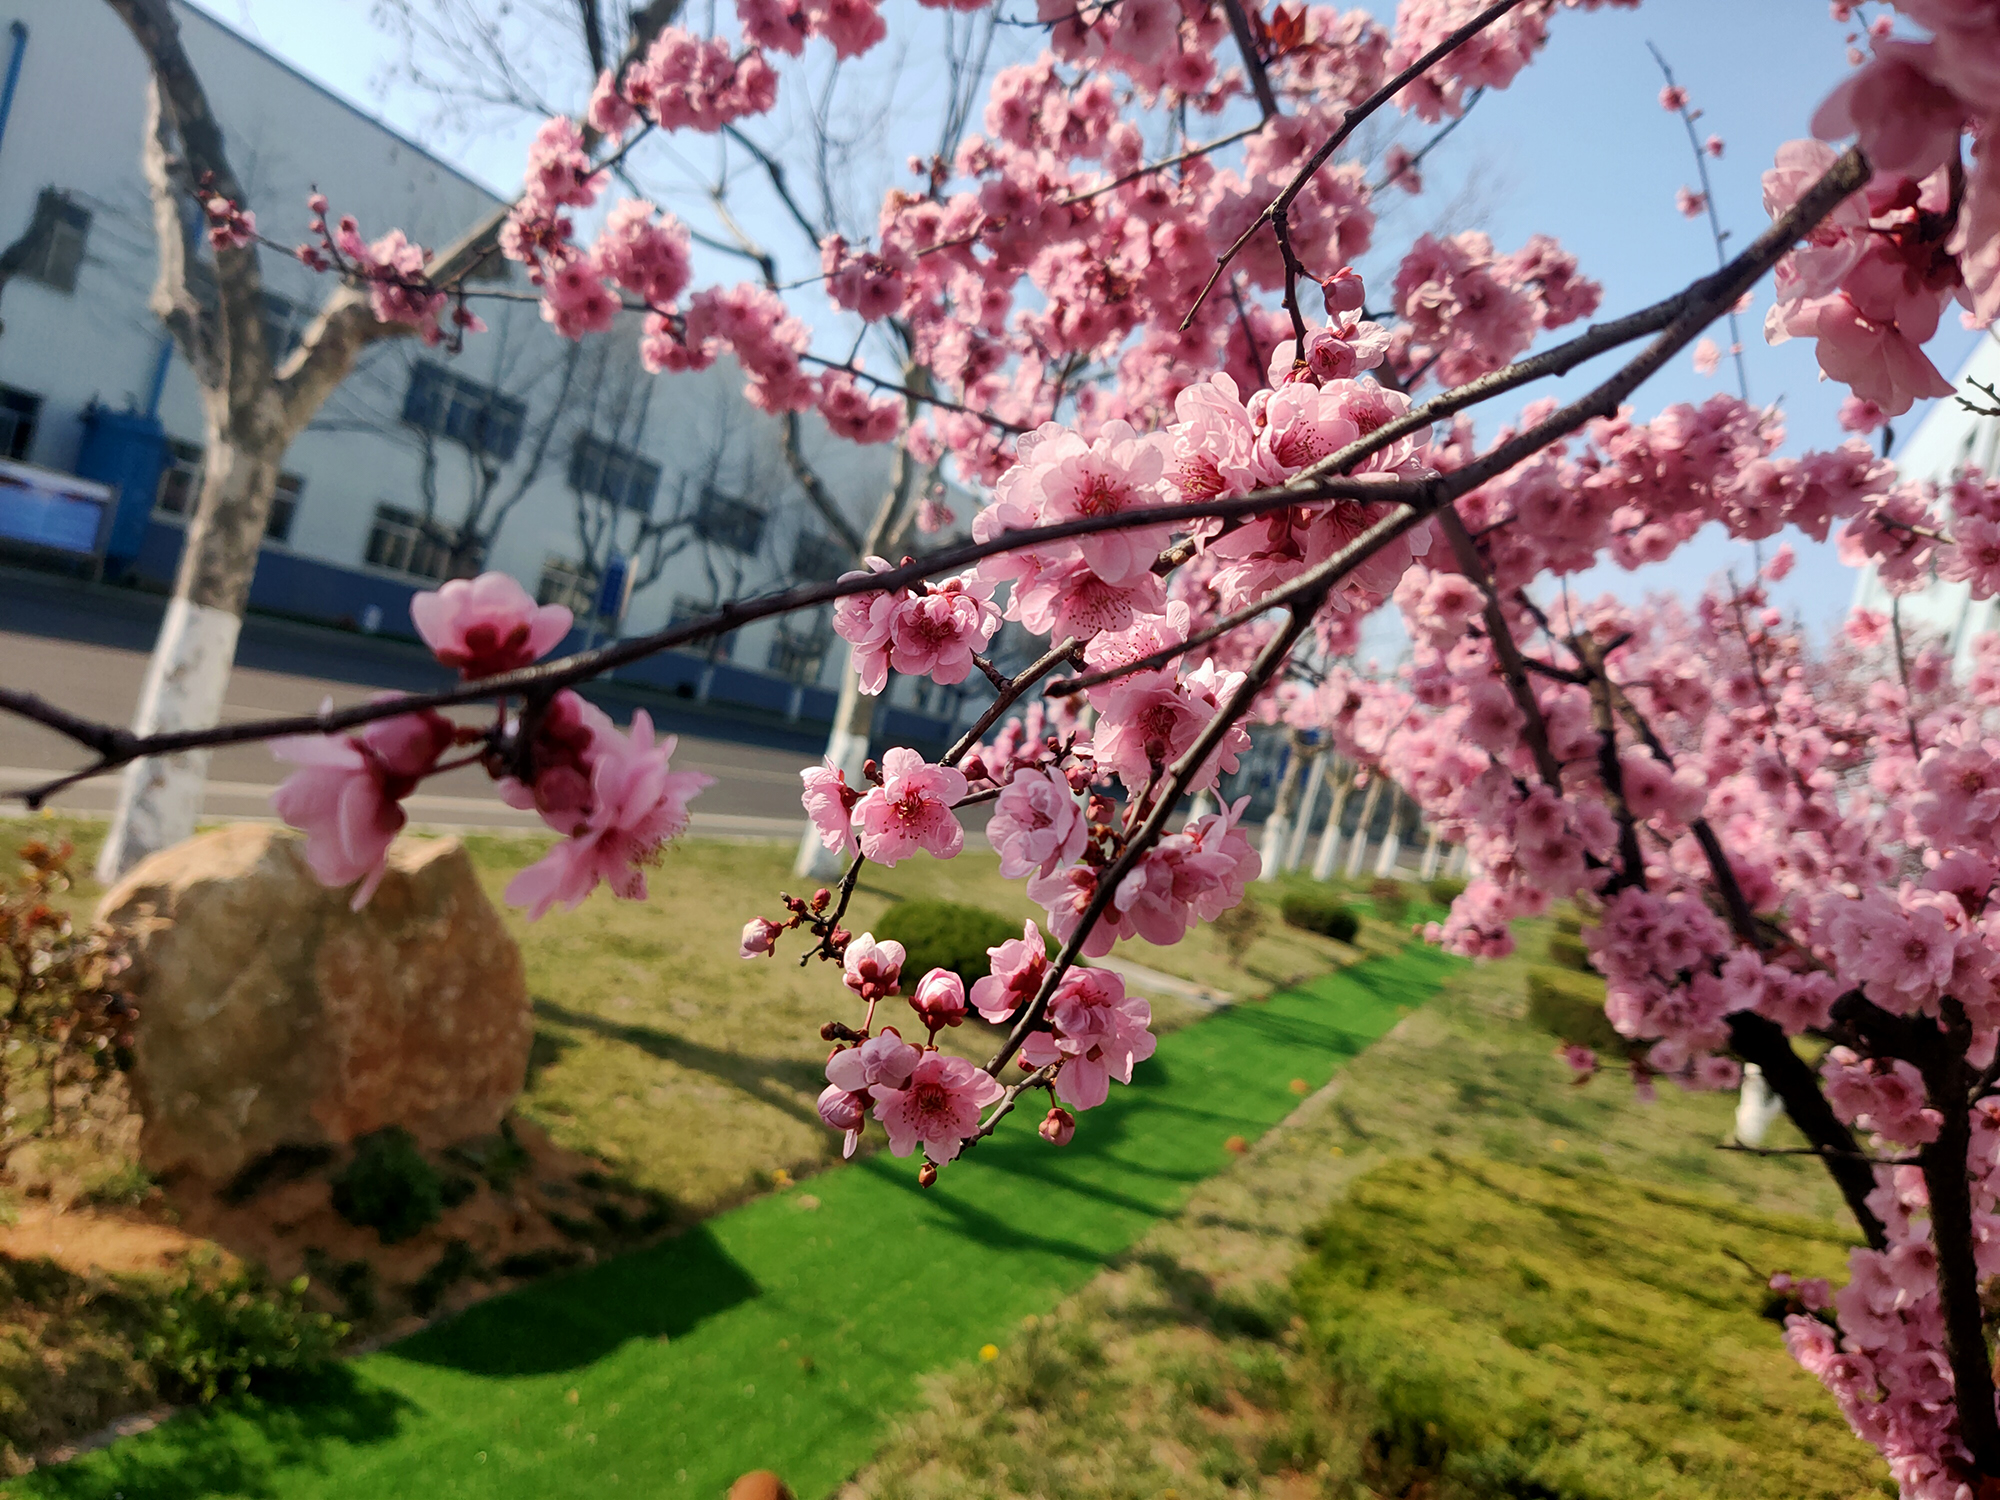 公司办公室  牛新媛  公司路边的樱花，透过樱花能够看到部分厂区和南北大路。樱花艳丽的云霞点缀了我们的春天，也点缀了天润工业厂区的壮美画卷。.jpg